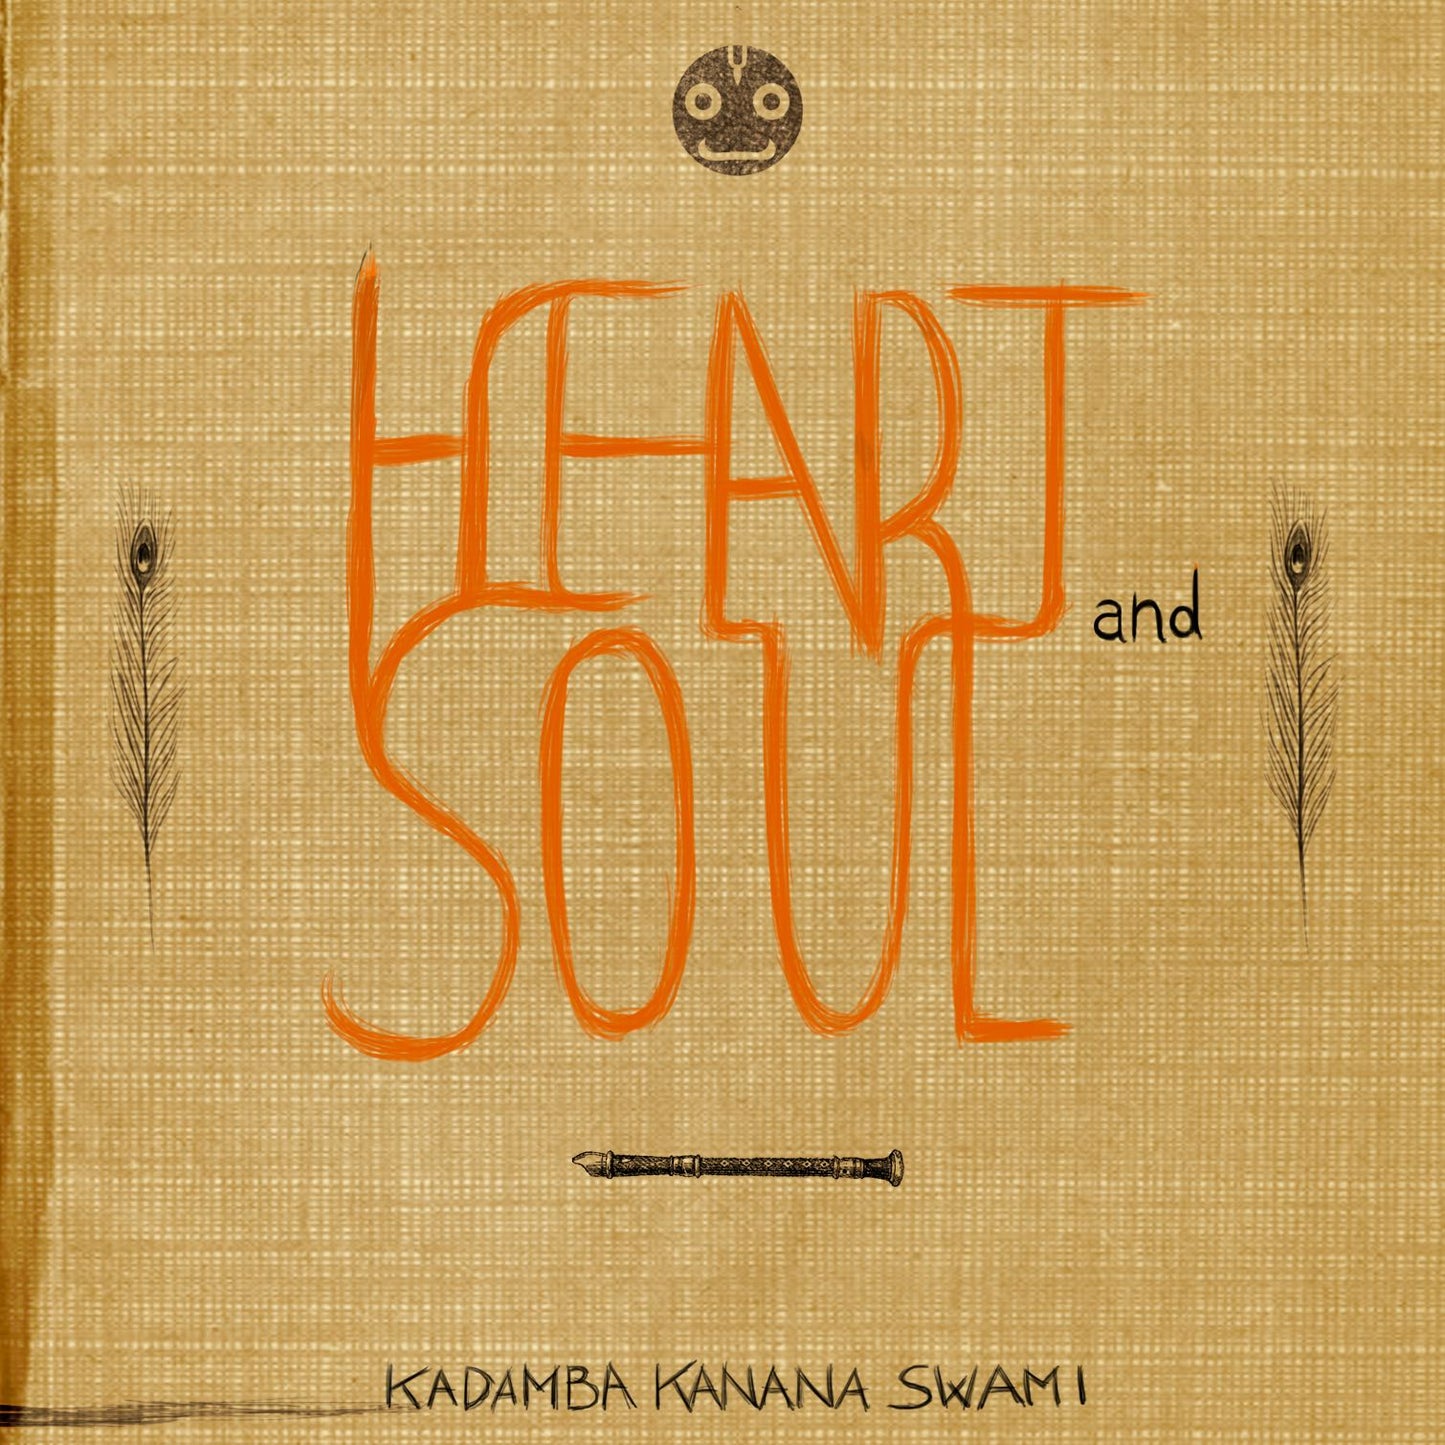 Heart & Soul (download)